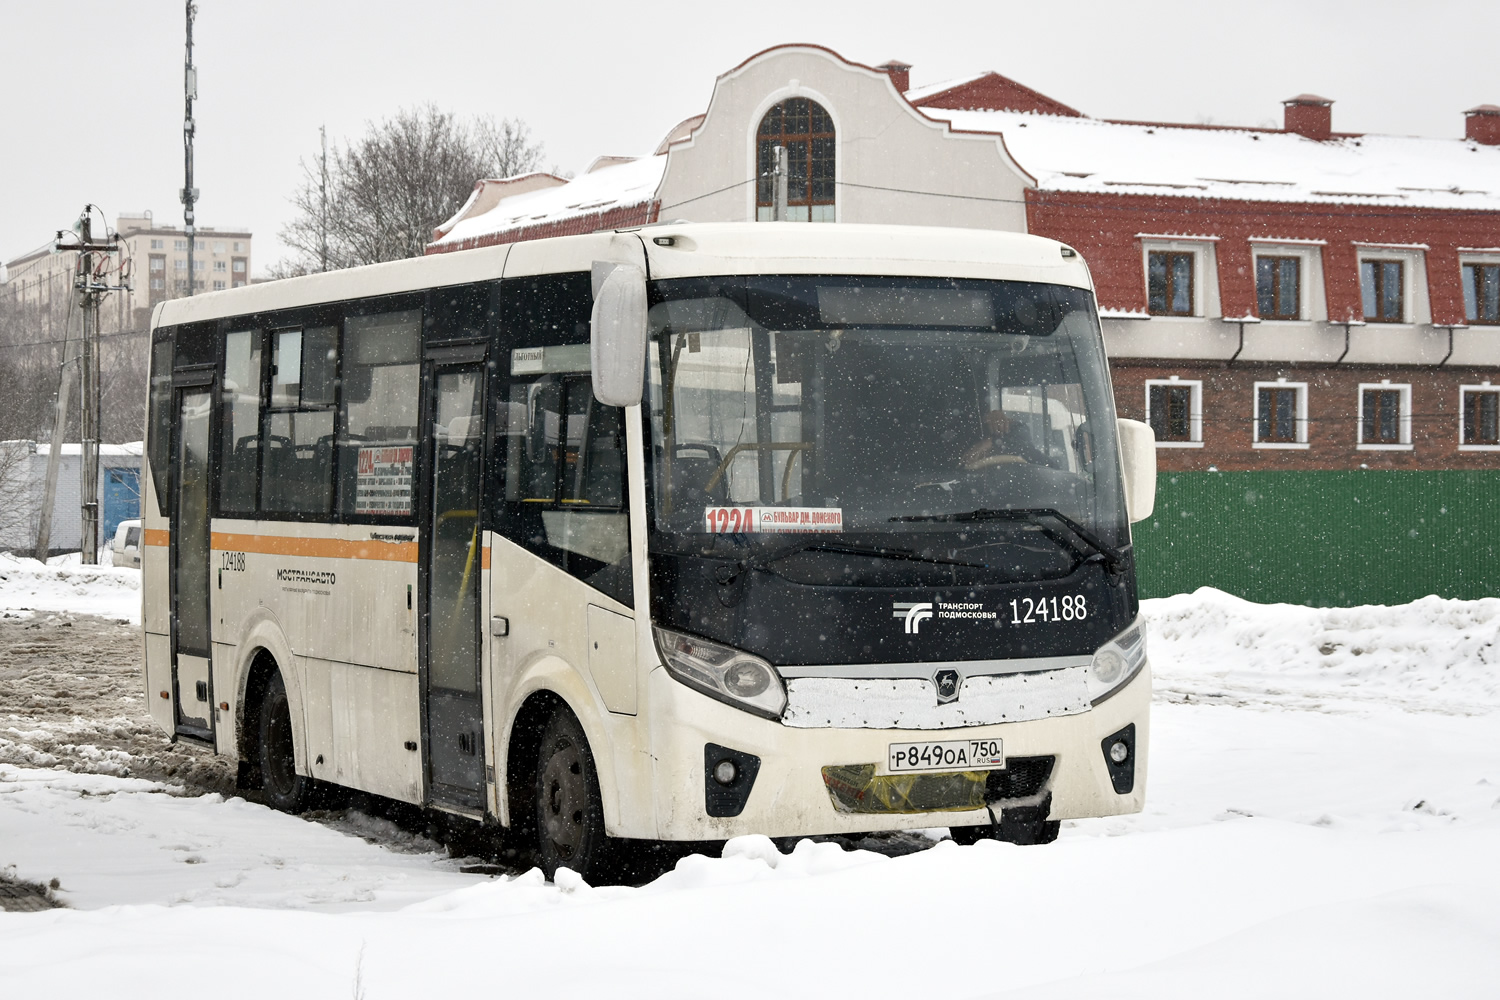 Moskevská oblast, PAZ-320405-04 "Vector Next" č. Р 849 ОА 750